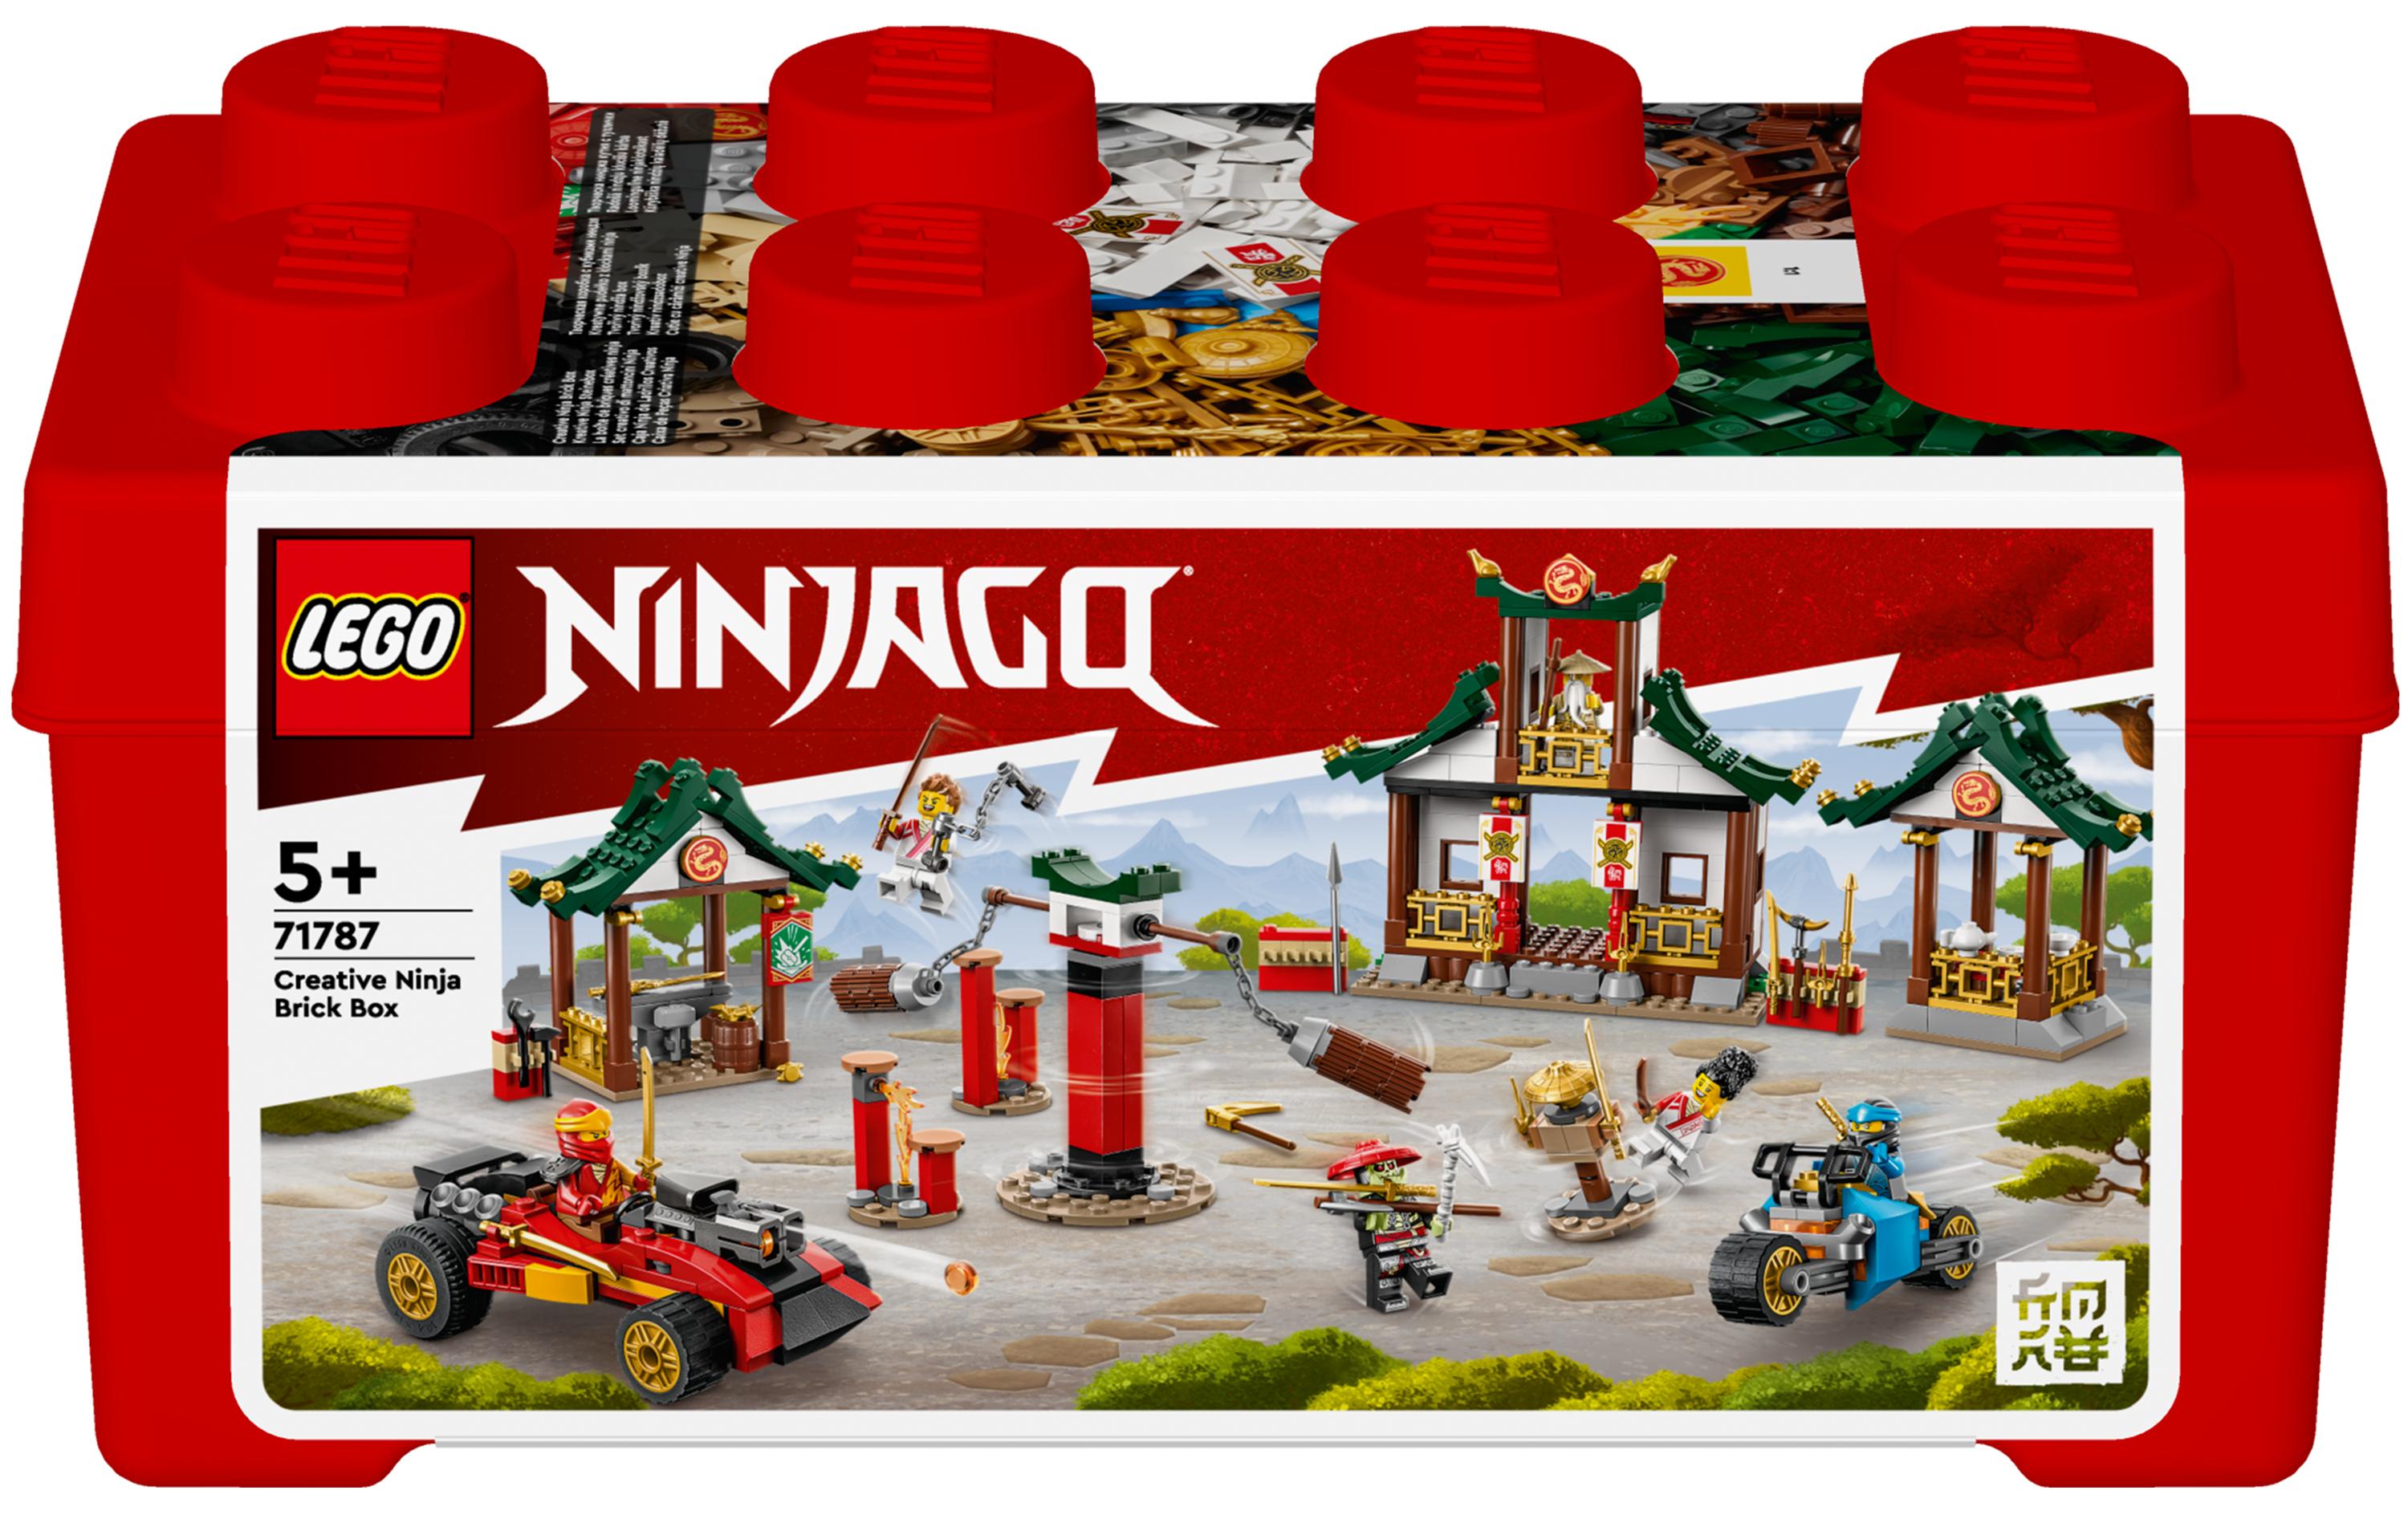 LEGO® Ninjago Kreative Ninja Steinebox 71787 - im GOLDSTIEN.SHOP verfügbar mit Gratisversand ab Schweizer Lager! (5702017413037)